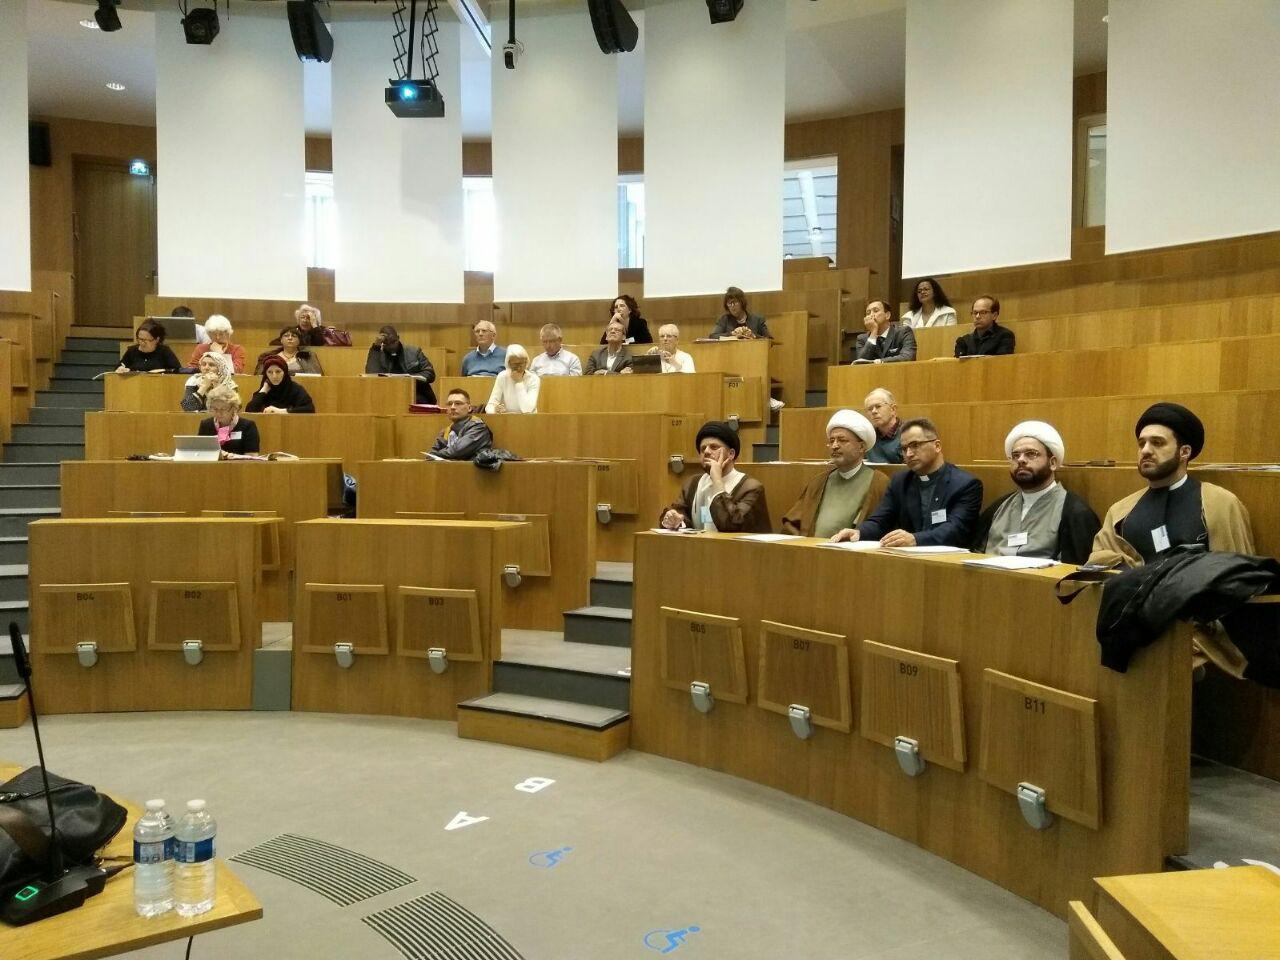 کنفرانس "روابط شیعه و مسیحیت" در دانشگاه کاتولیکی پاریس